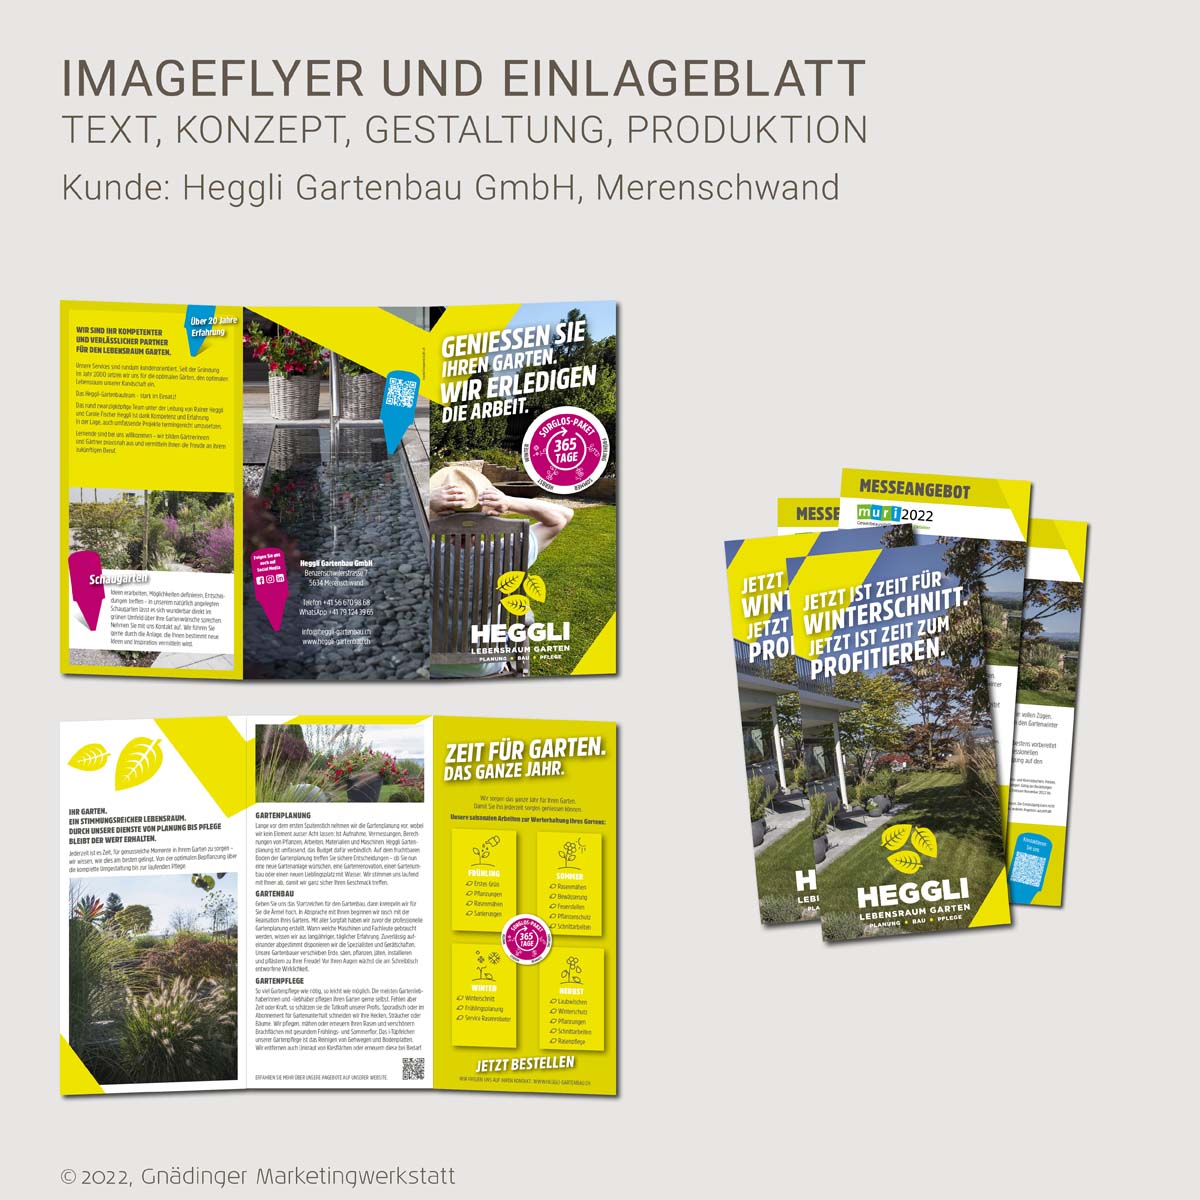 WEB1_GMW_Projekt_Heggli-Gartenbau_Imageflyer-Einlegeblatt_10-2022_1200x1200px